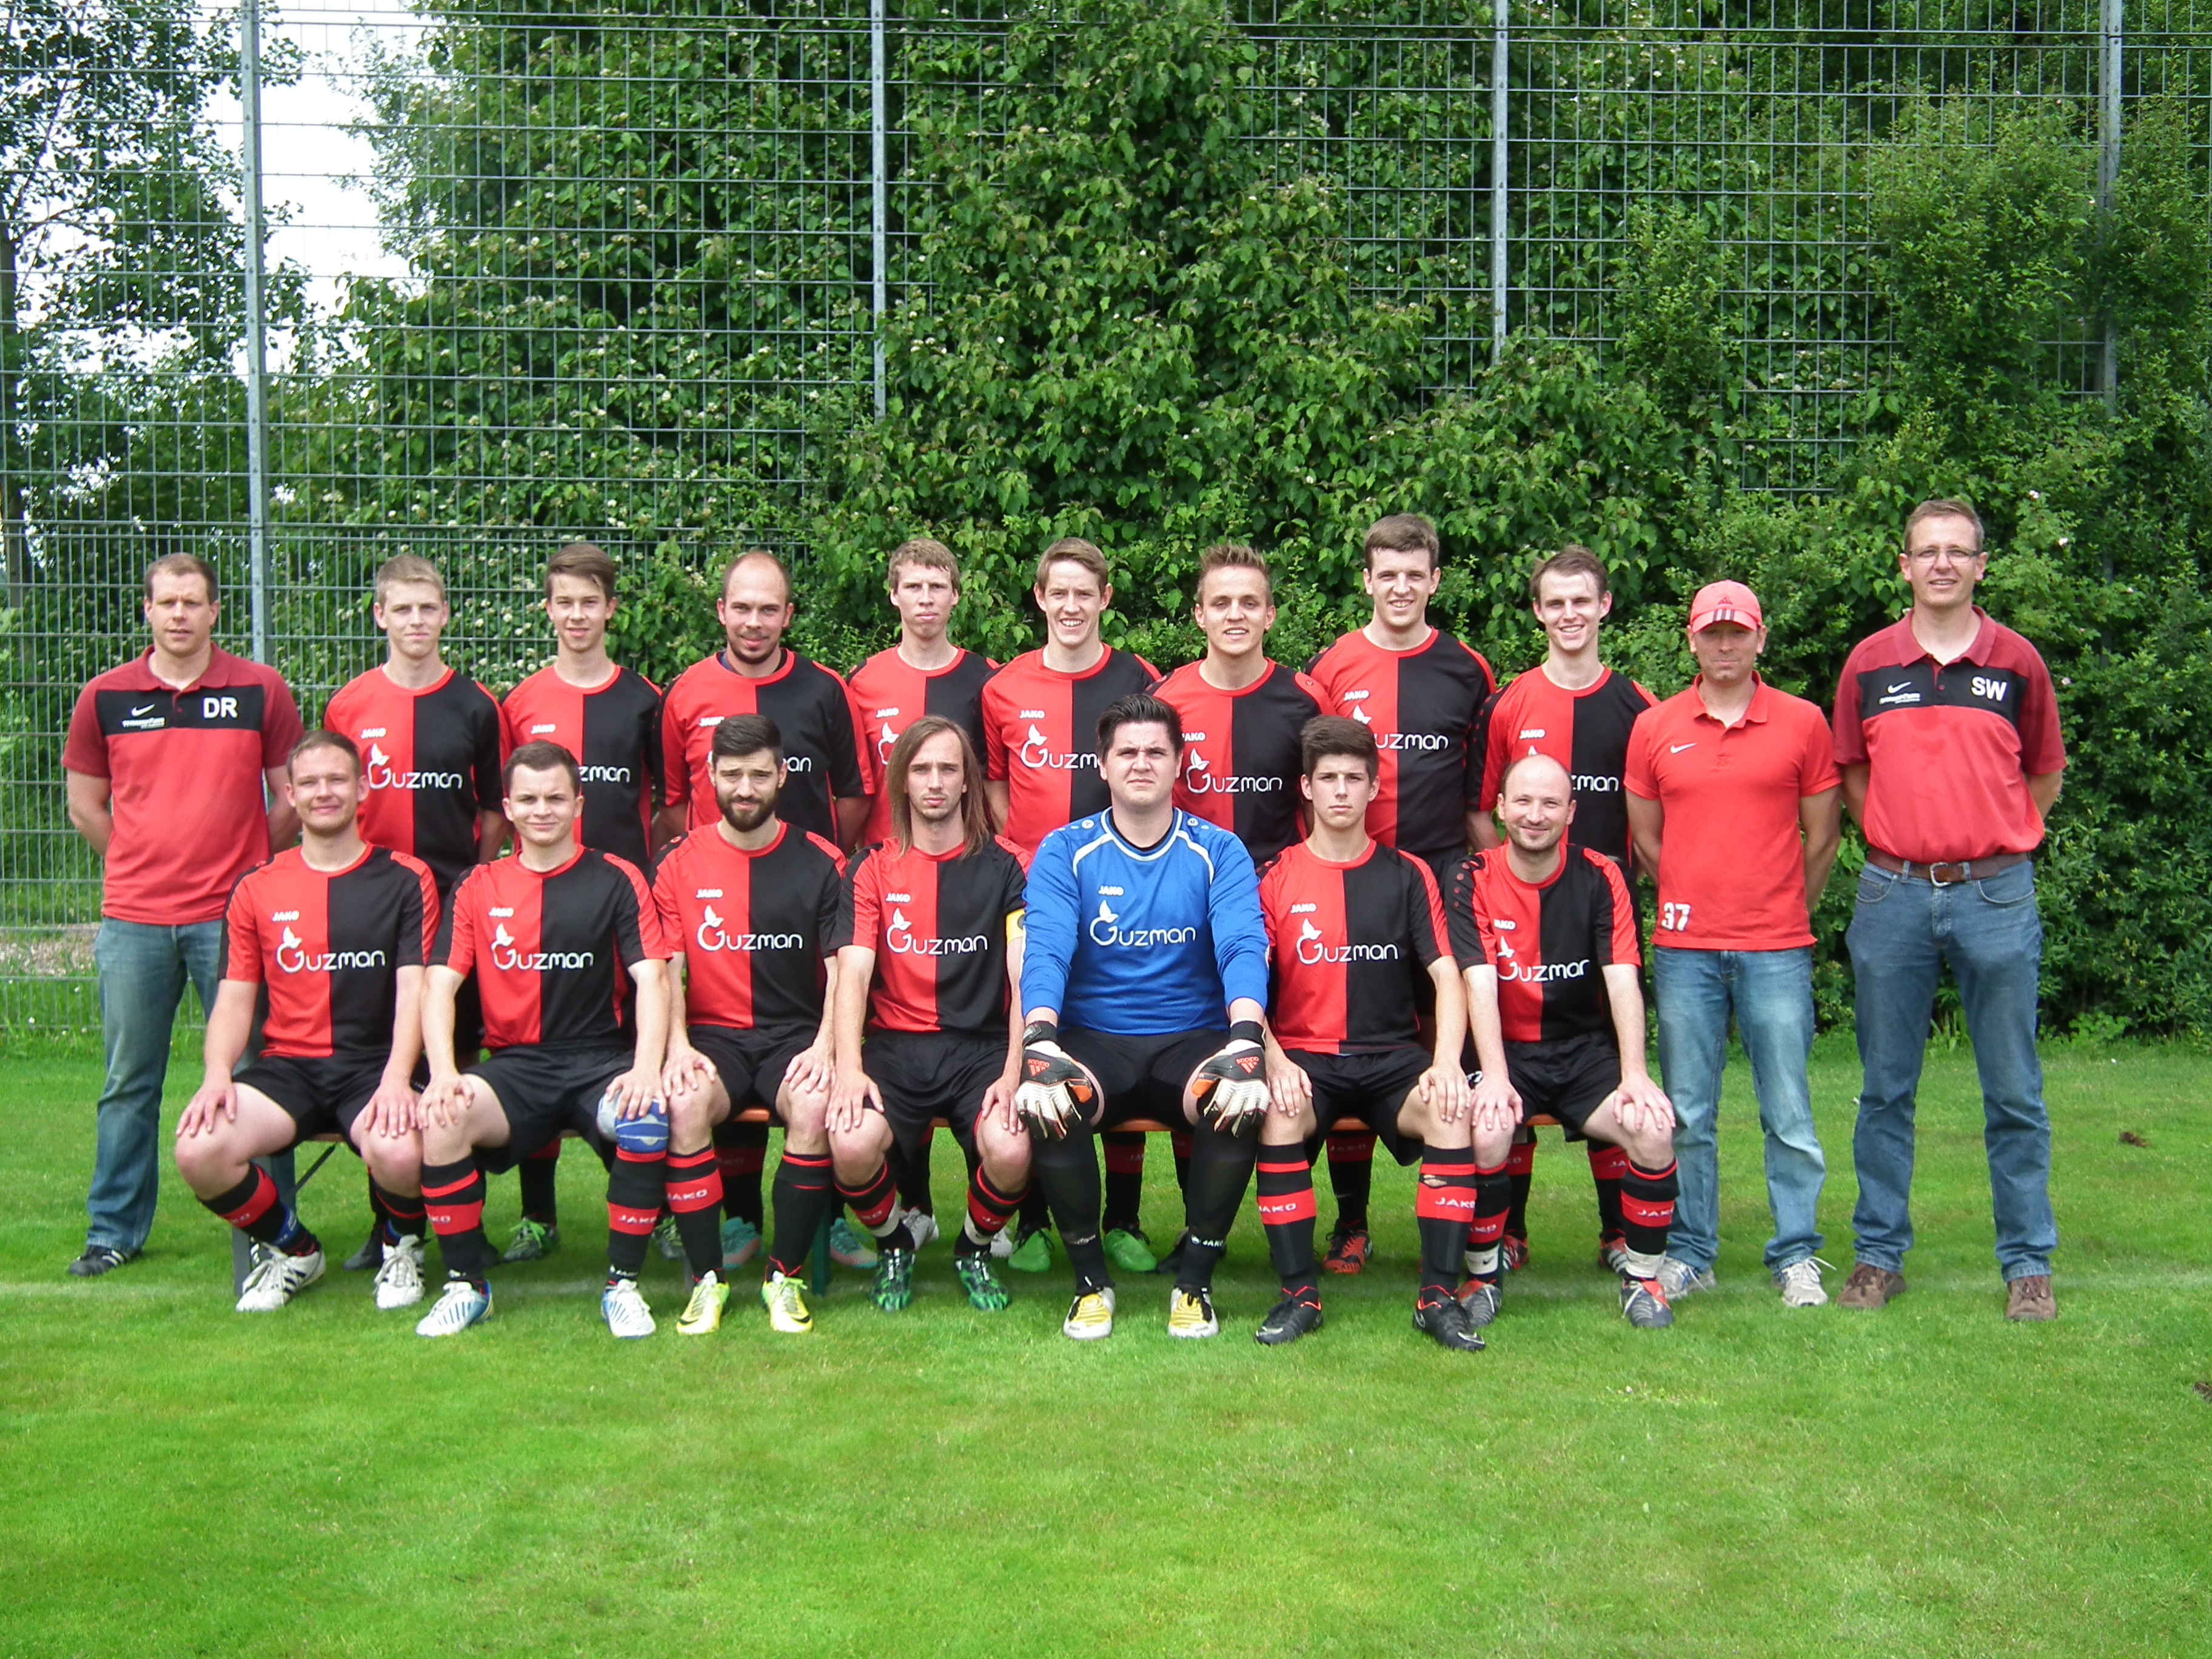 Mannschaftsfoto/Teamfoto von GSV Eibensbach